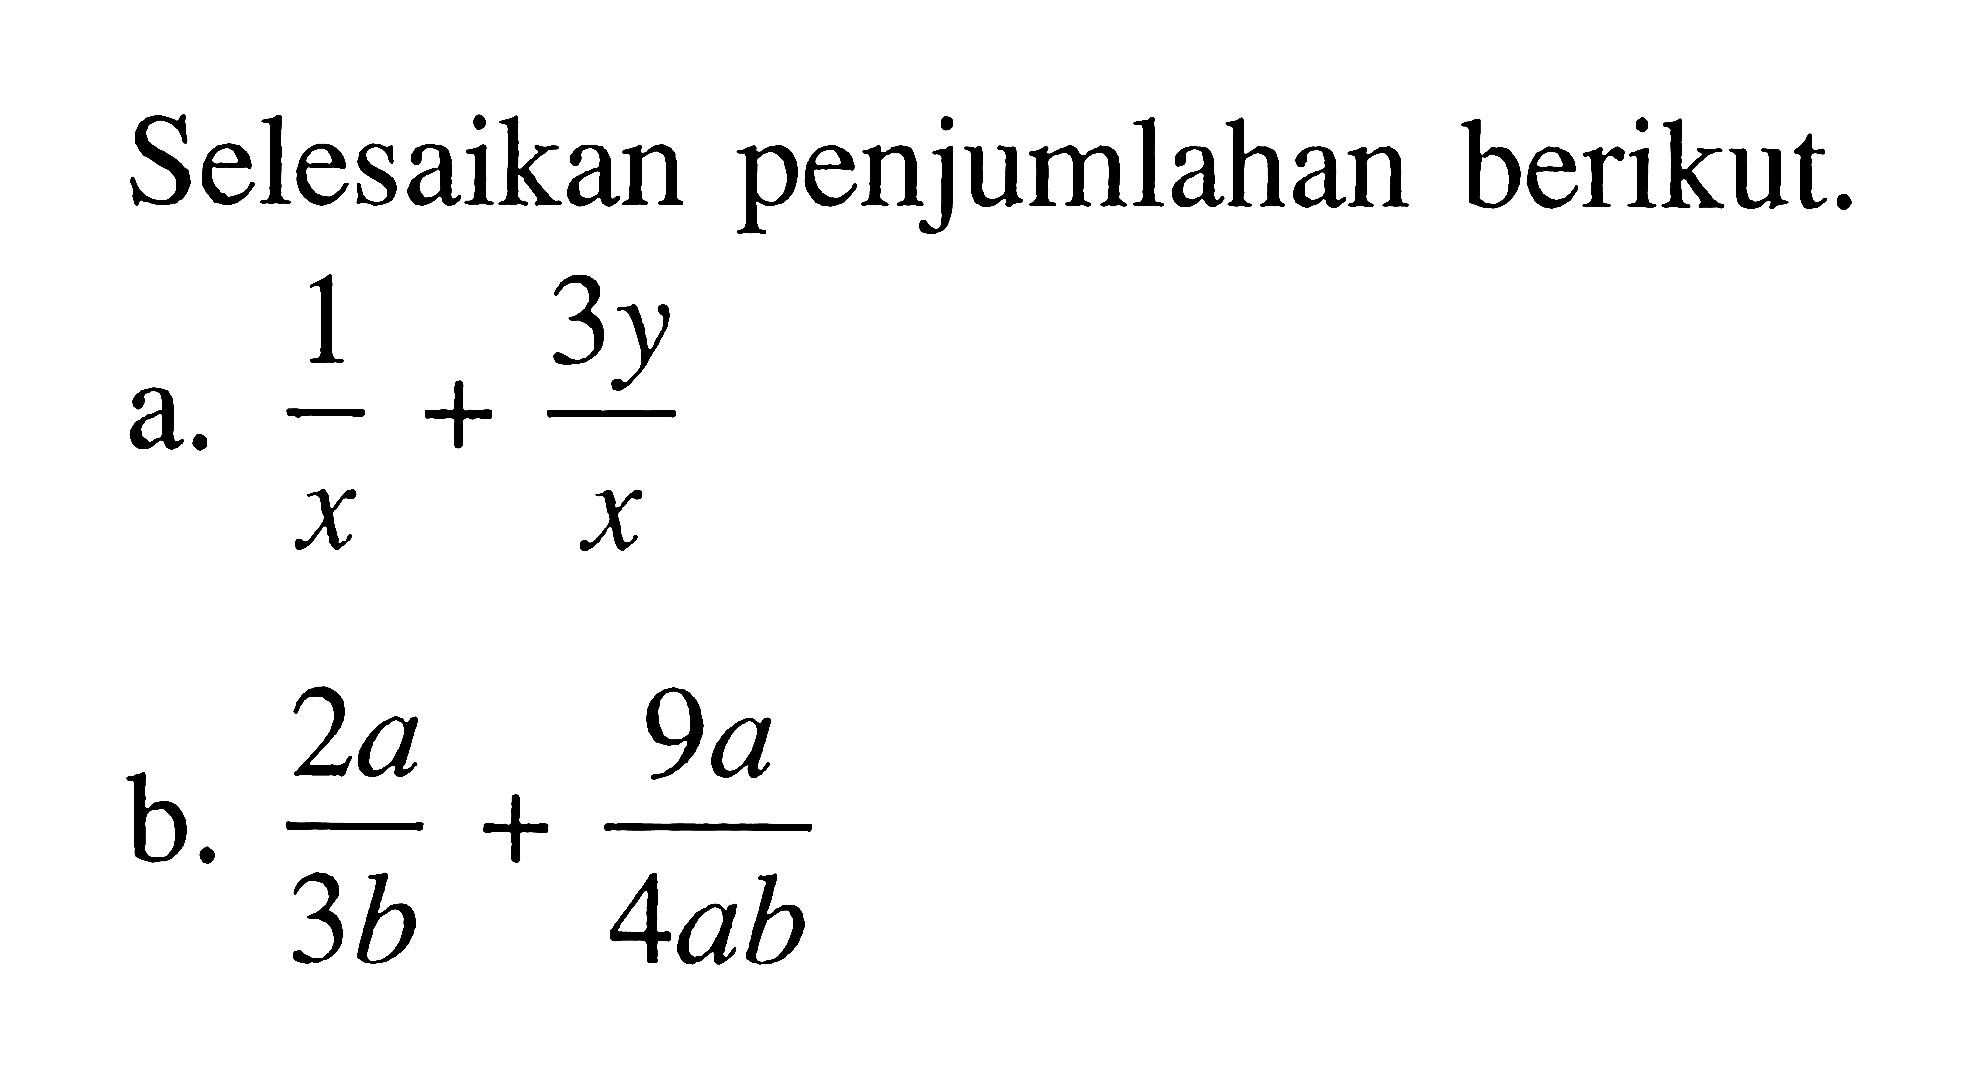 Selesaikan penjumlahan berikut. a. 1/x + 3y/x b. 2a/3b + 9a/4ab